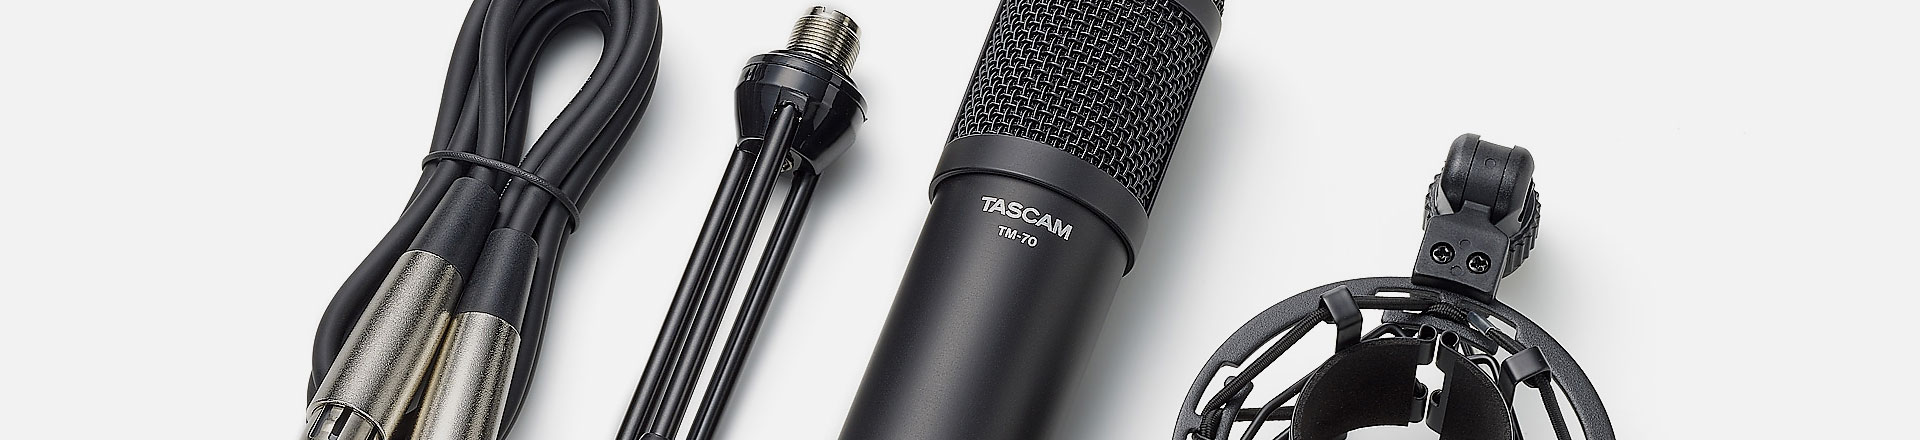 TM-70, czyli nowy mikrofon broadcastowy od Tascama